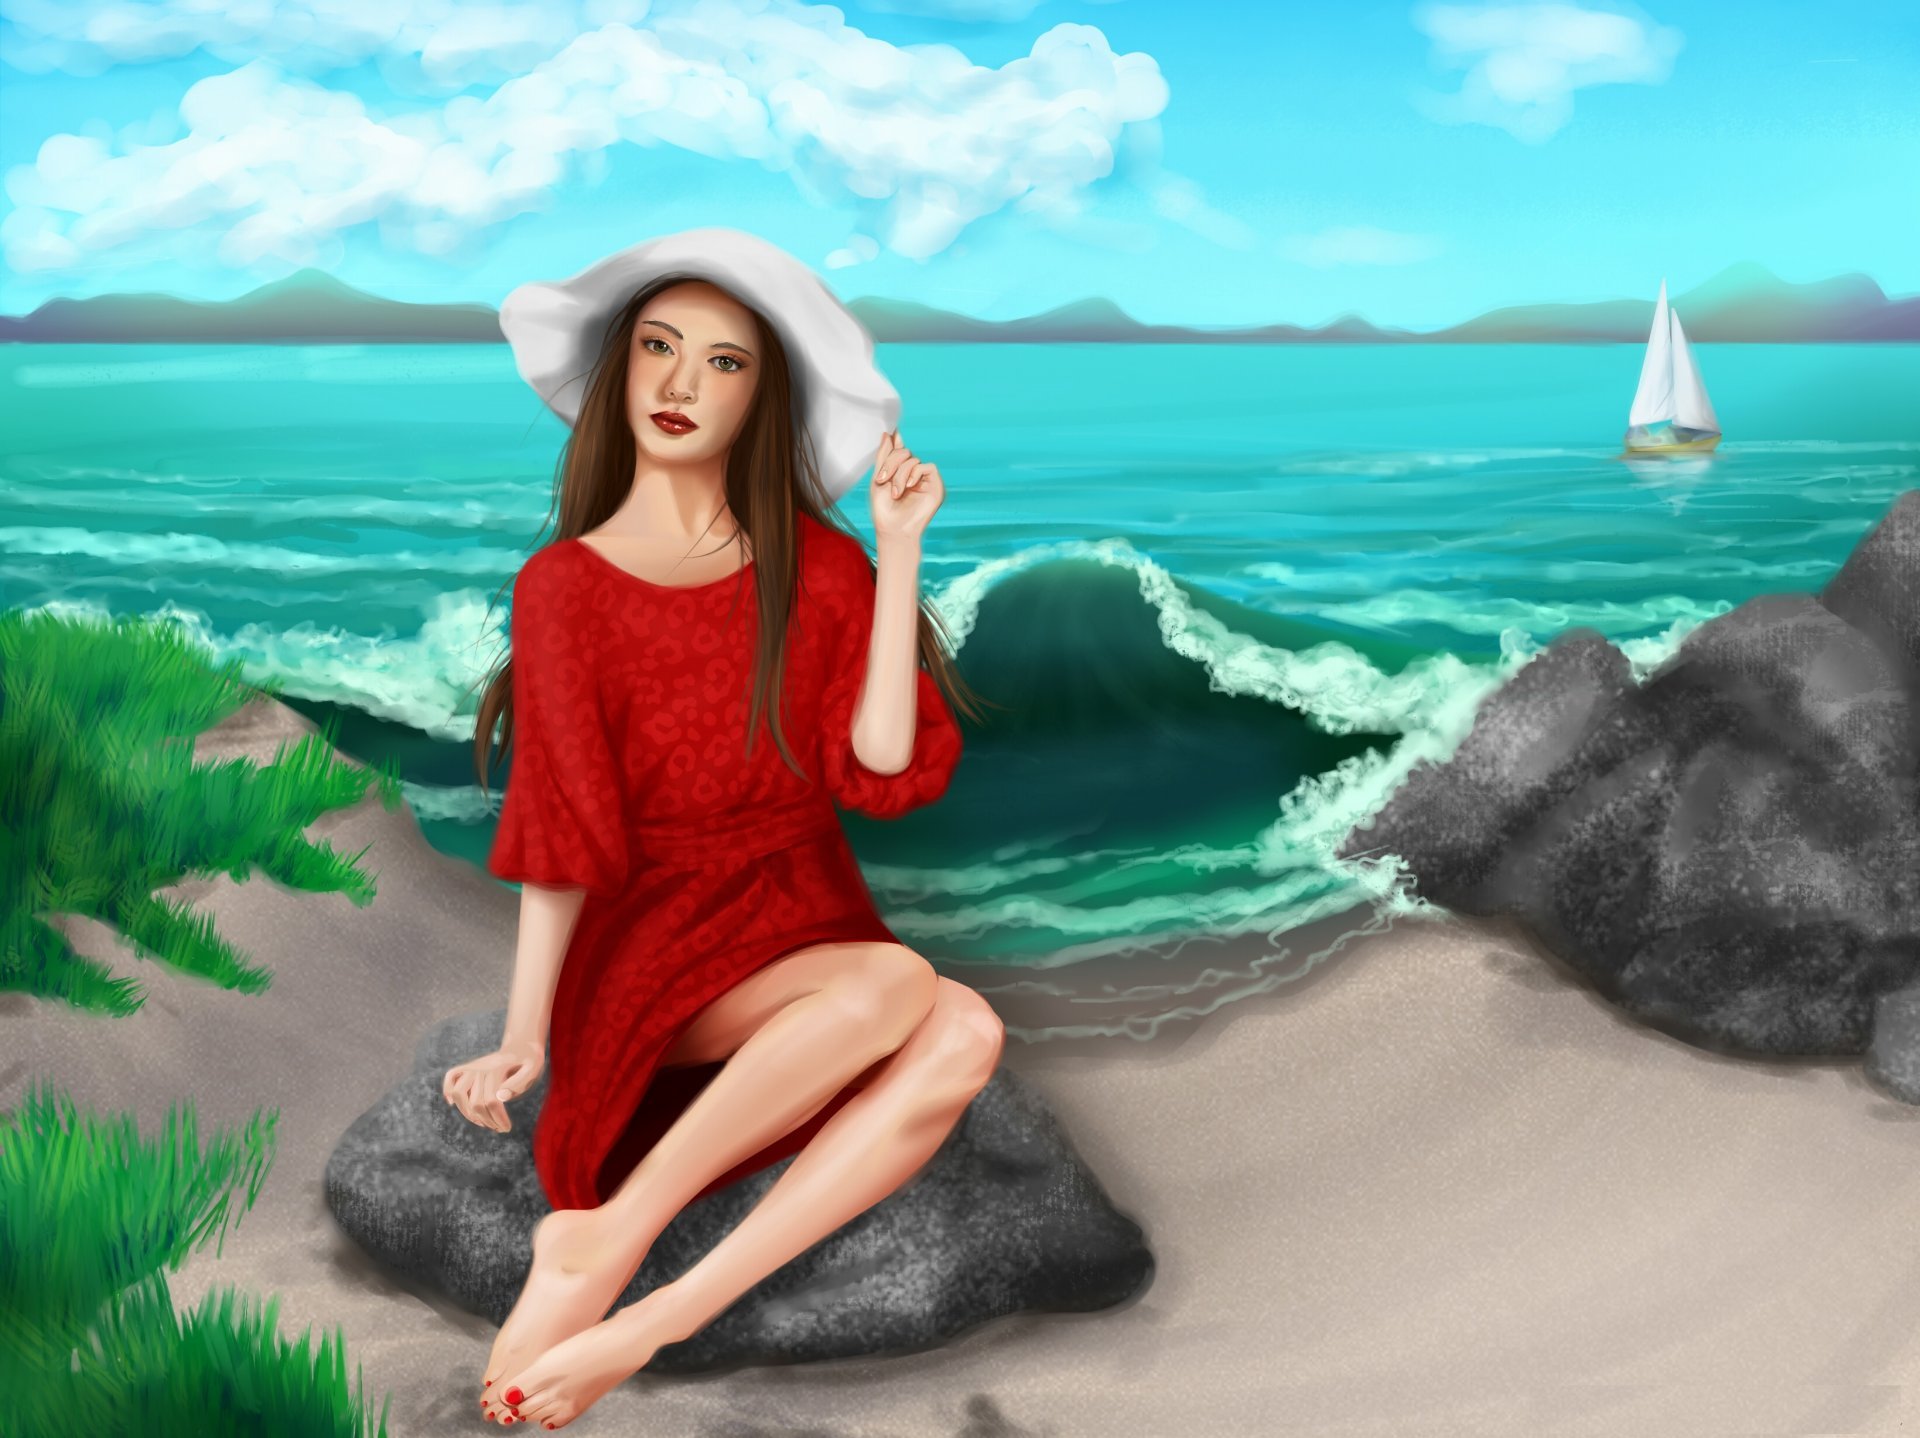 Женский портрет на фоне моря